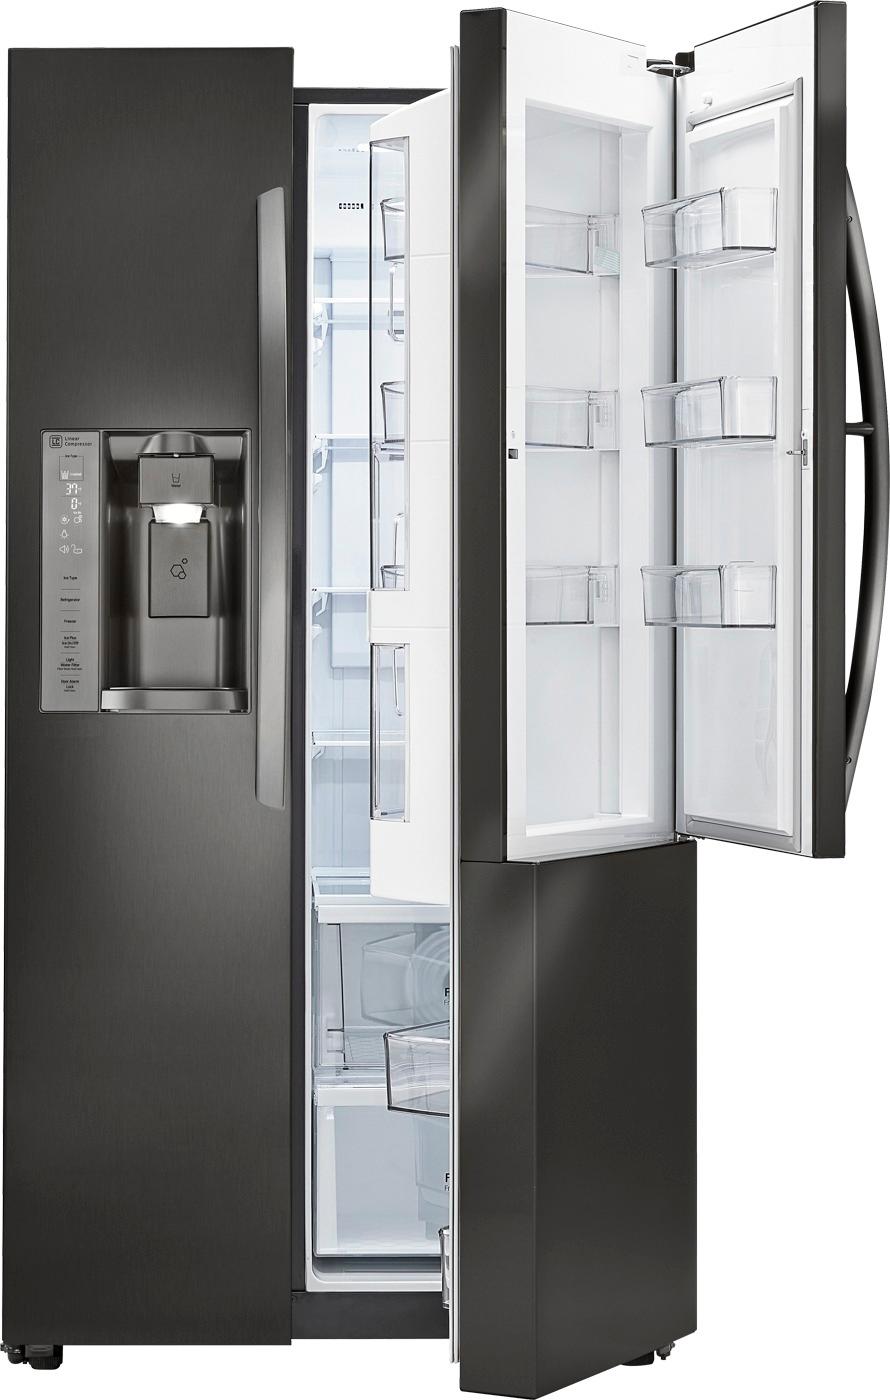 Best Buy: LG 26 Cu. Ft. Door-in-Door Side-by-Side Refrigerator with ...